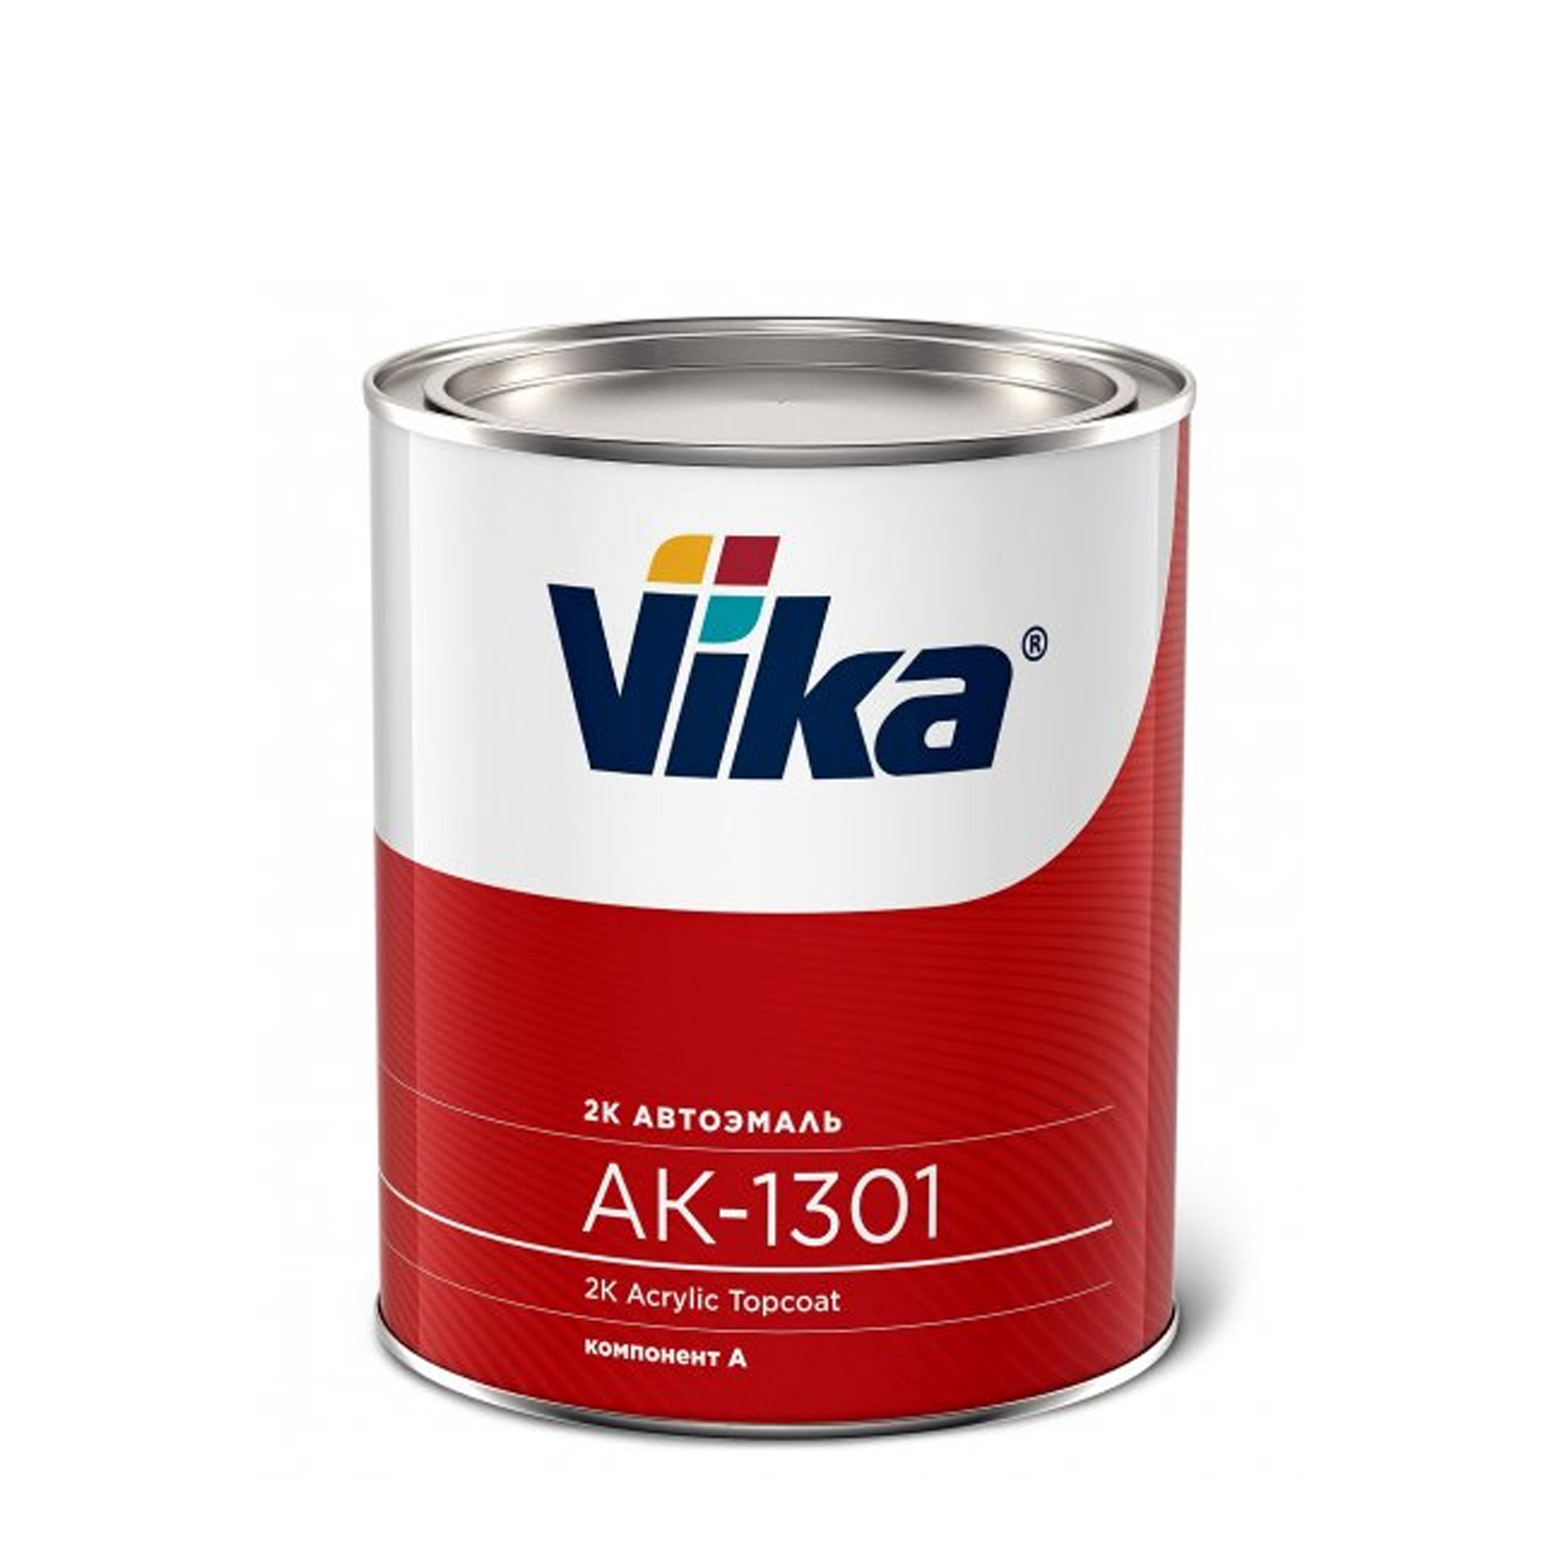 Фото 1 - Автоэмаль АК-1301, цвет 235 Бледно-Бежевая акриловая двухкомпонентная полуглянцевая - 0,85 кг Vika/Вика.